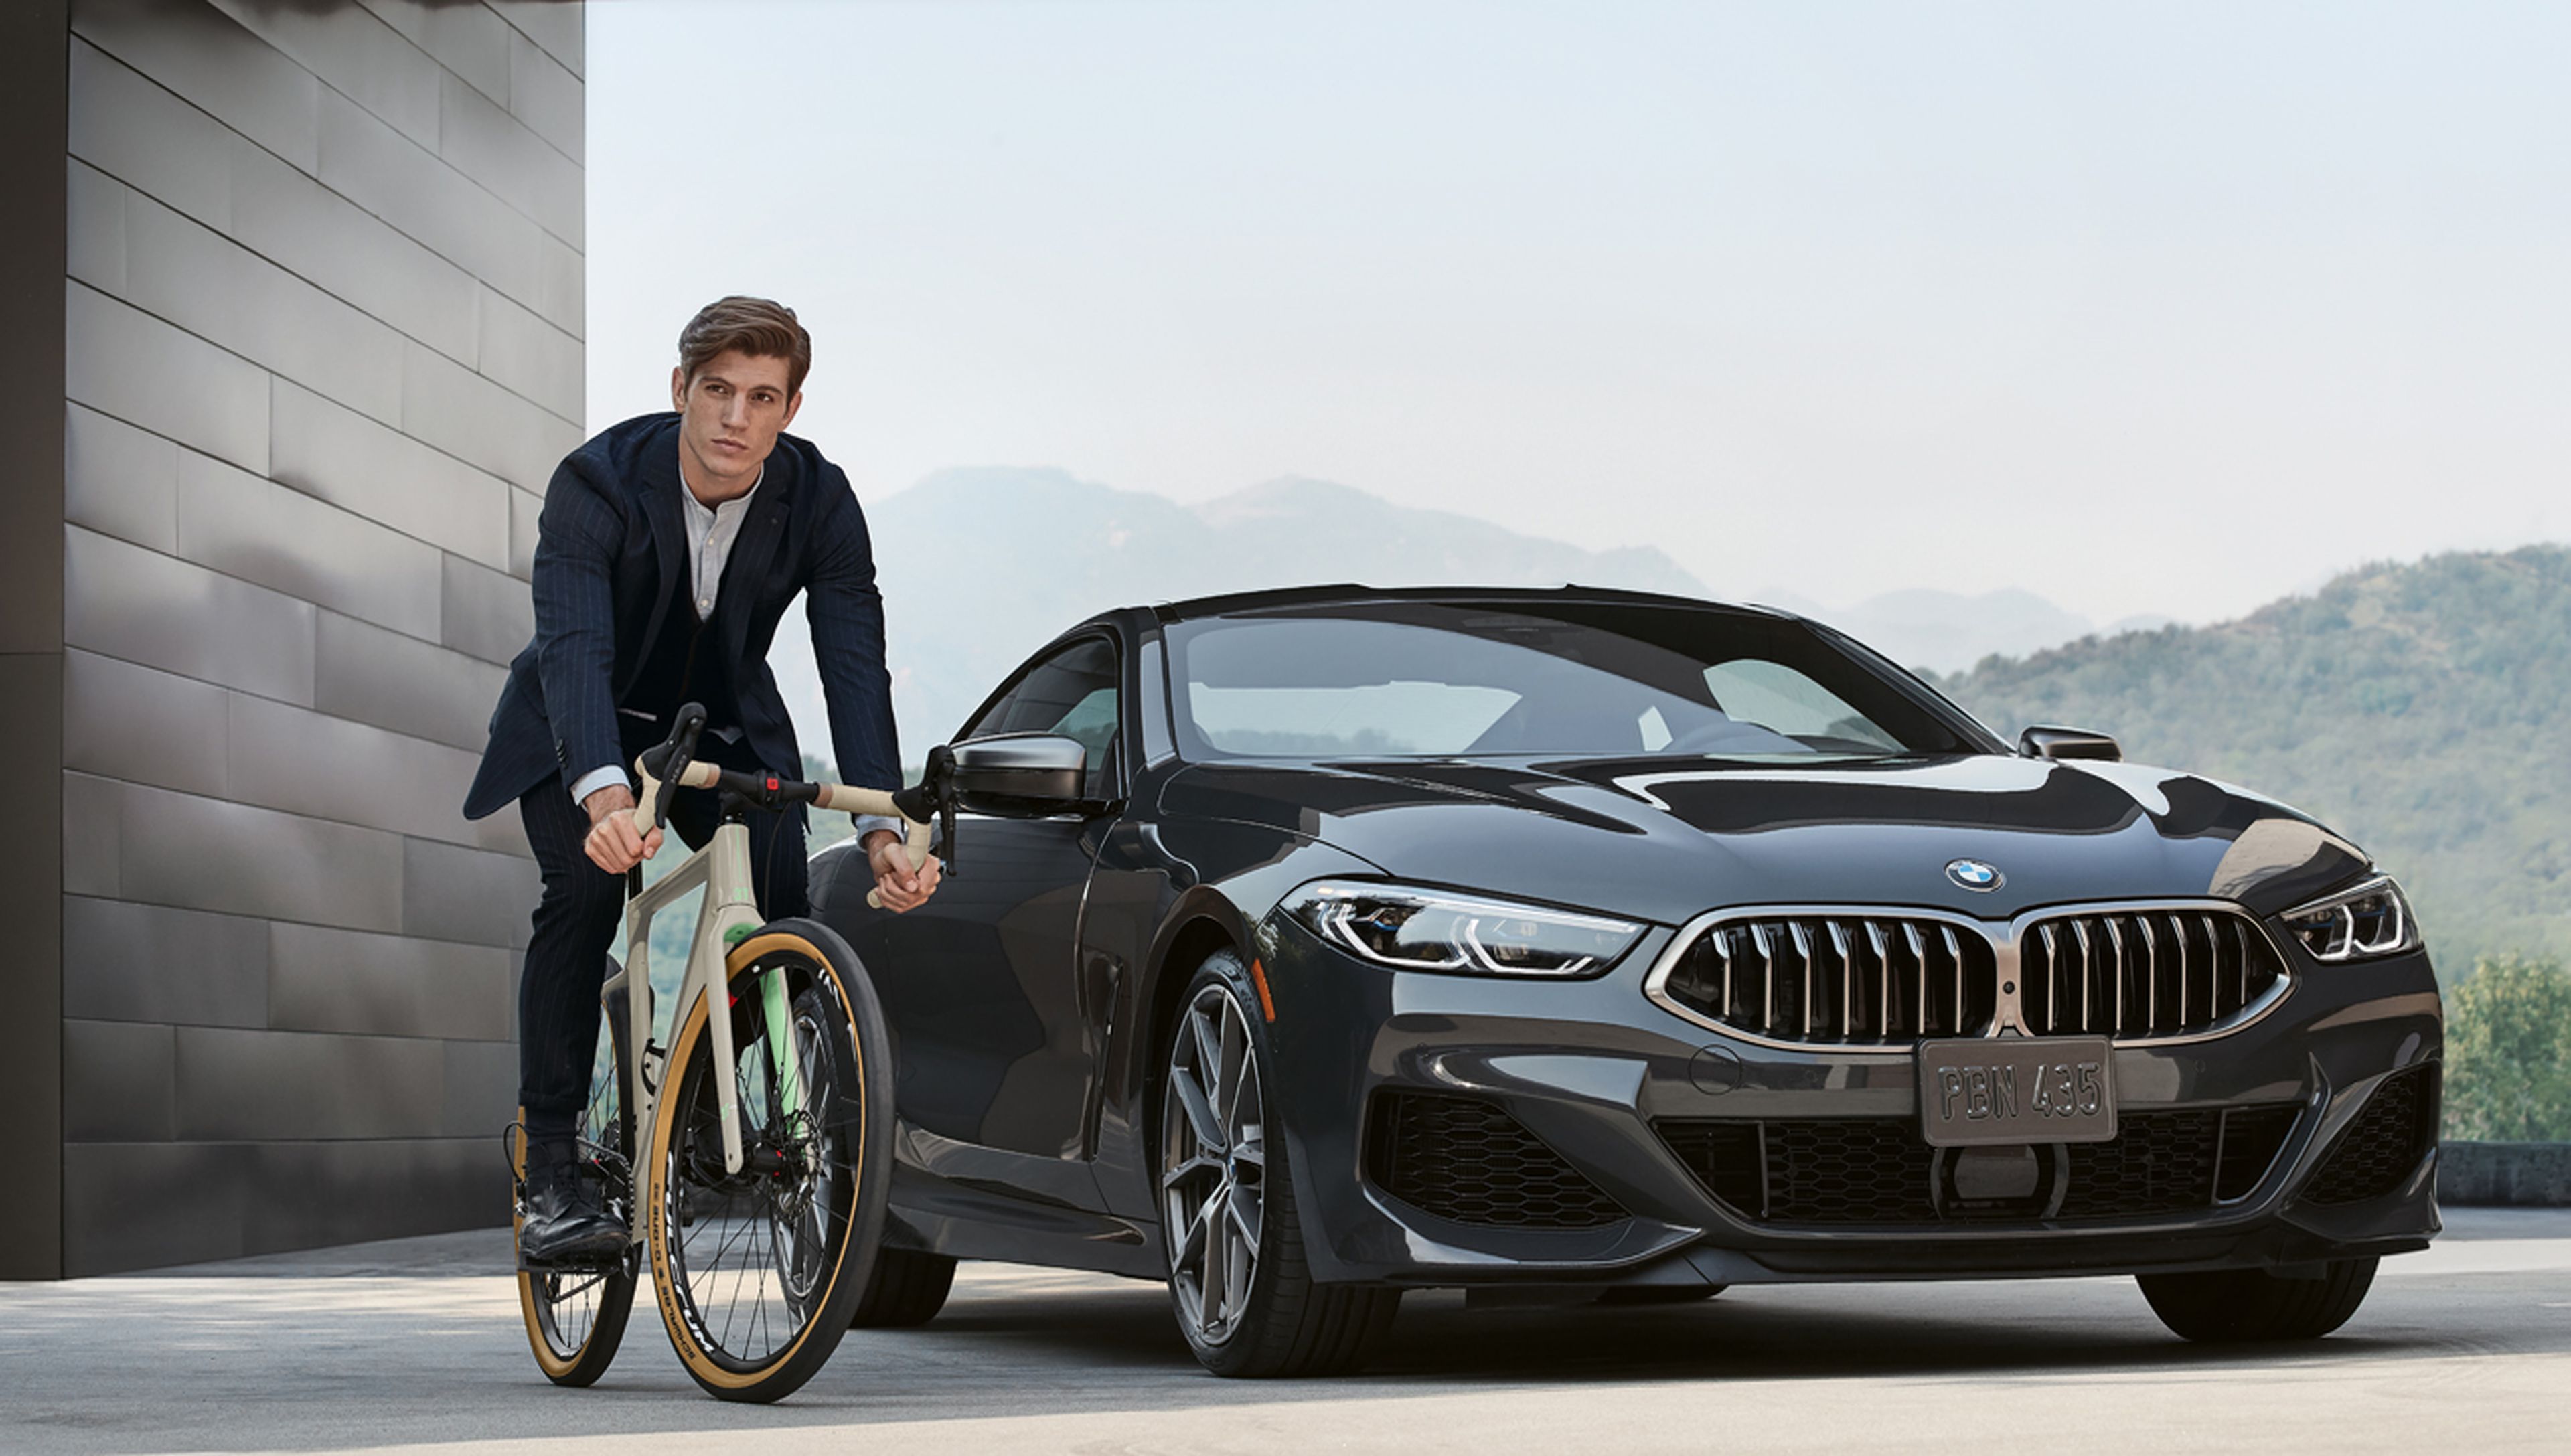 La BMW Exploro se ha fabricado en colaboración con la marca de bicicletas italiana 3T